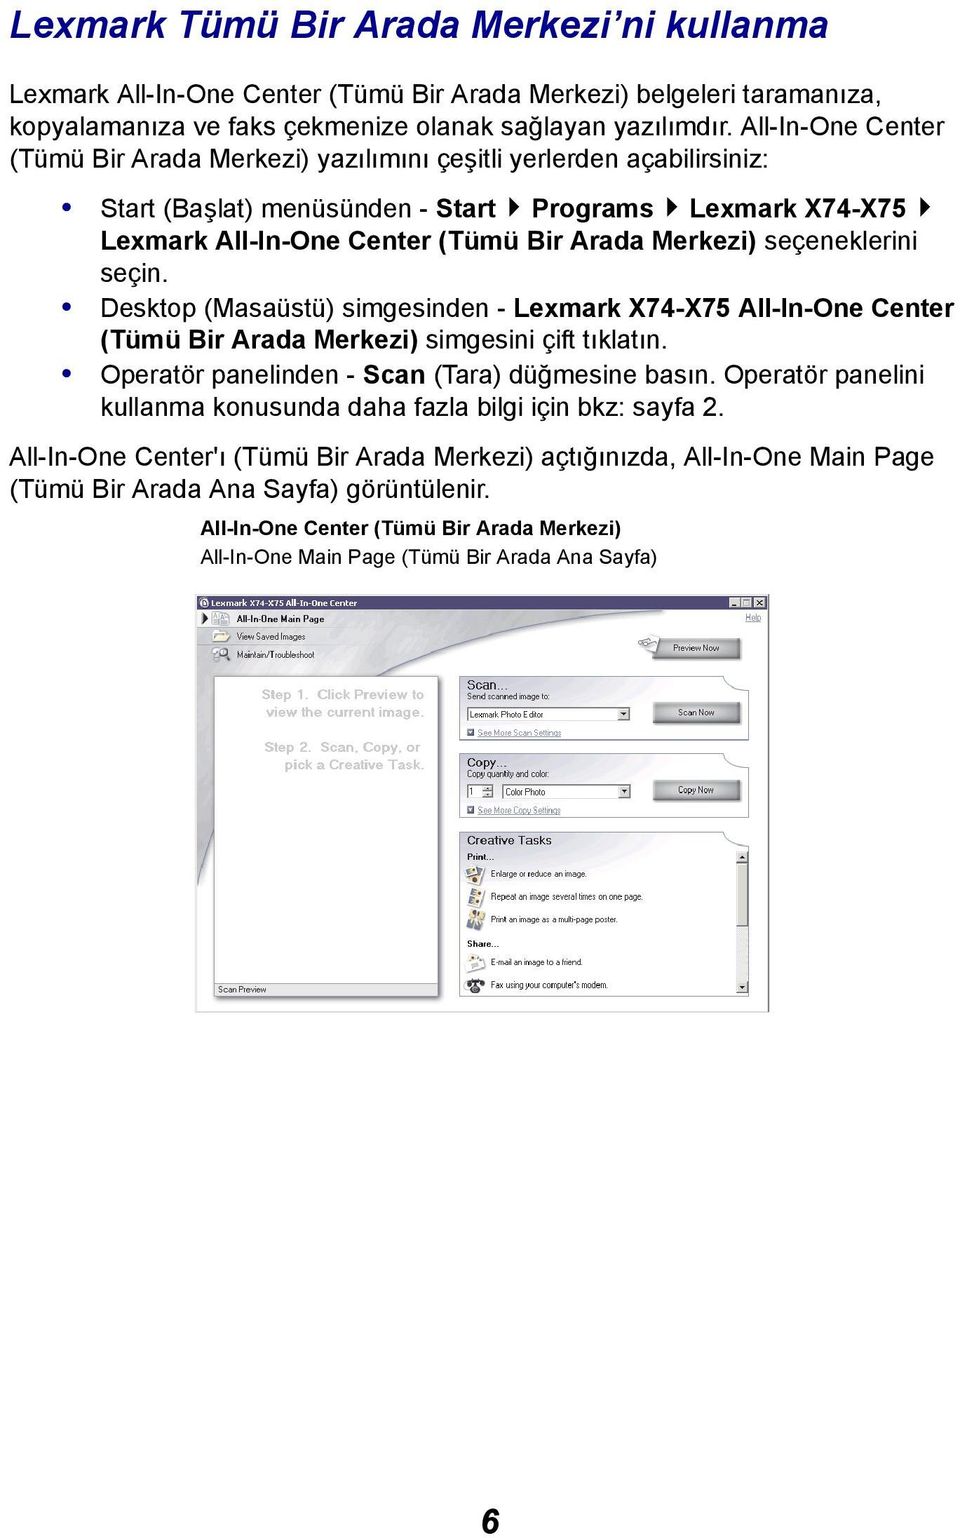 seçeneklerini seçin. Desktop (Masaüstü) simgesinden - Lexmark X74-X75 All-In-One Center (Tümü Bir Arada Merkezi) simgesini çift tıklatın. Operatör panelinden - Scan (Tara) düğmesine basın.